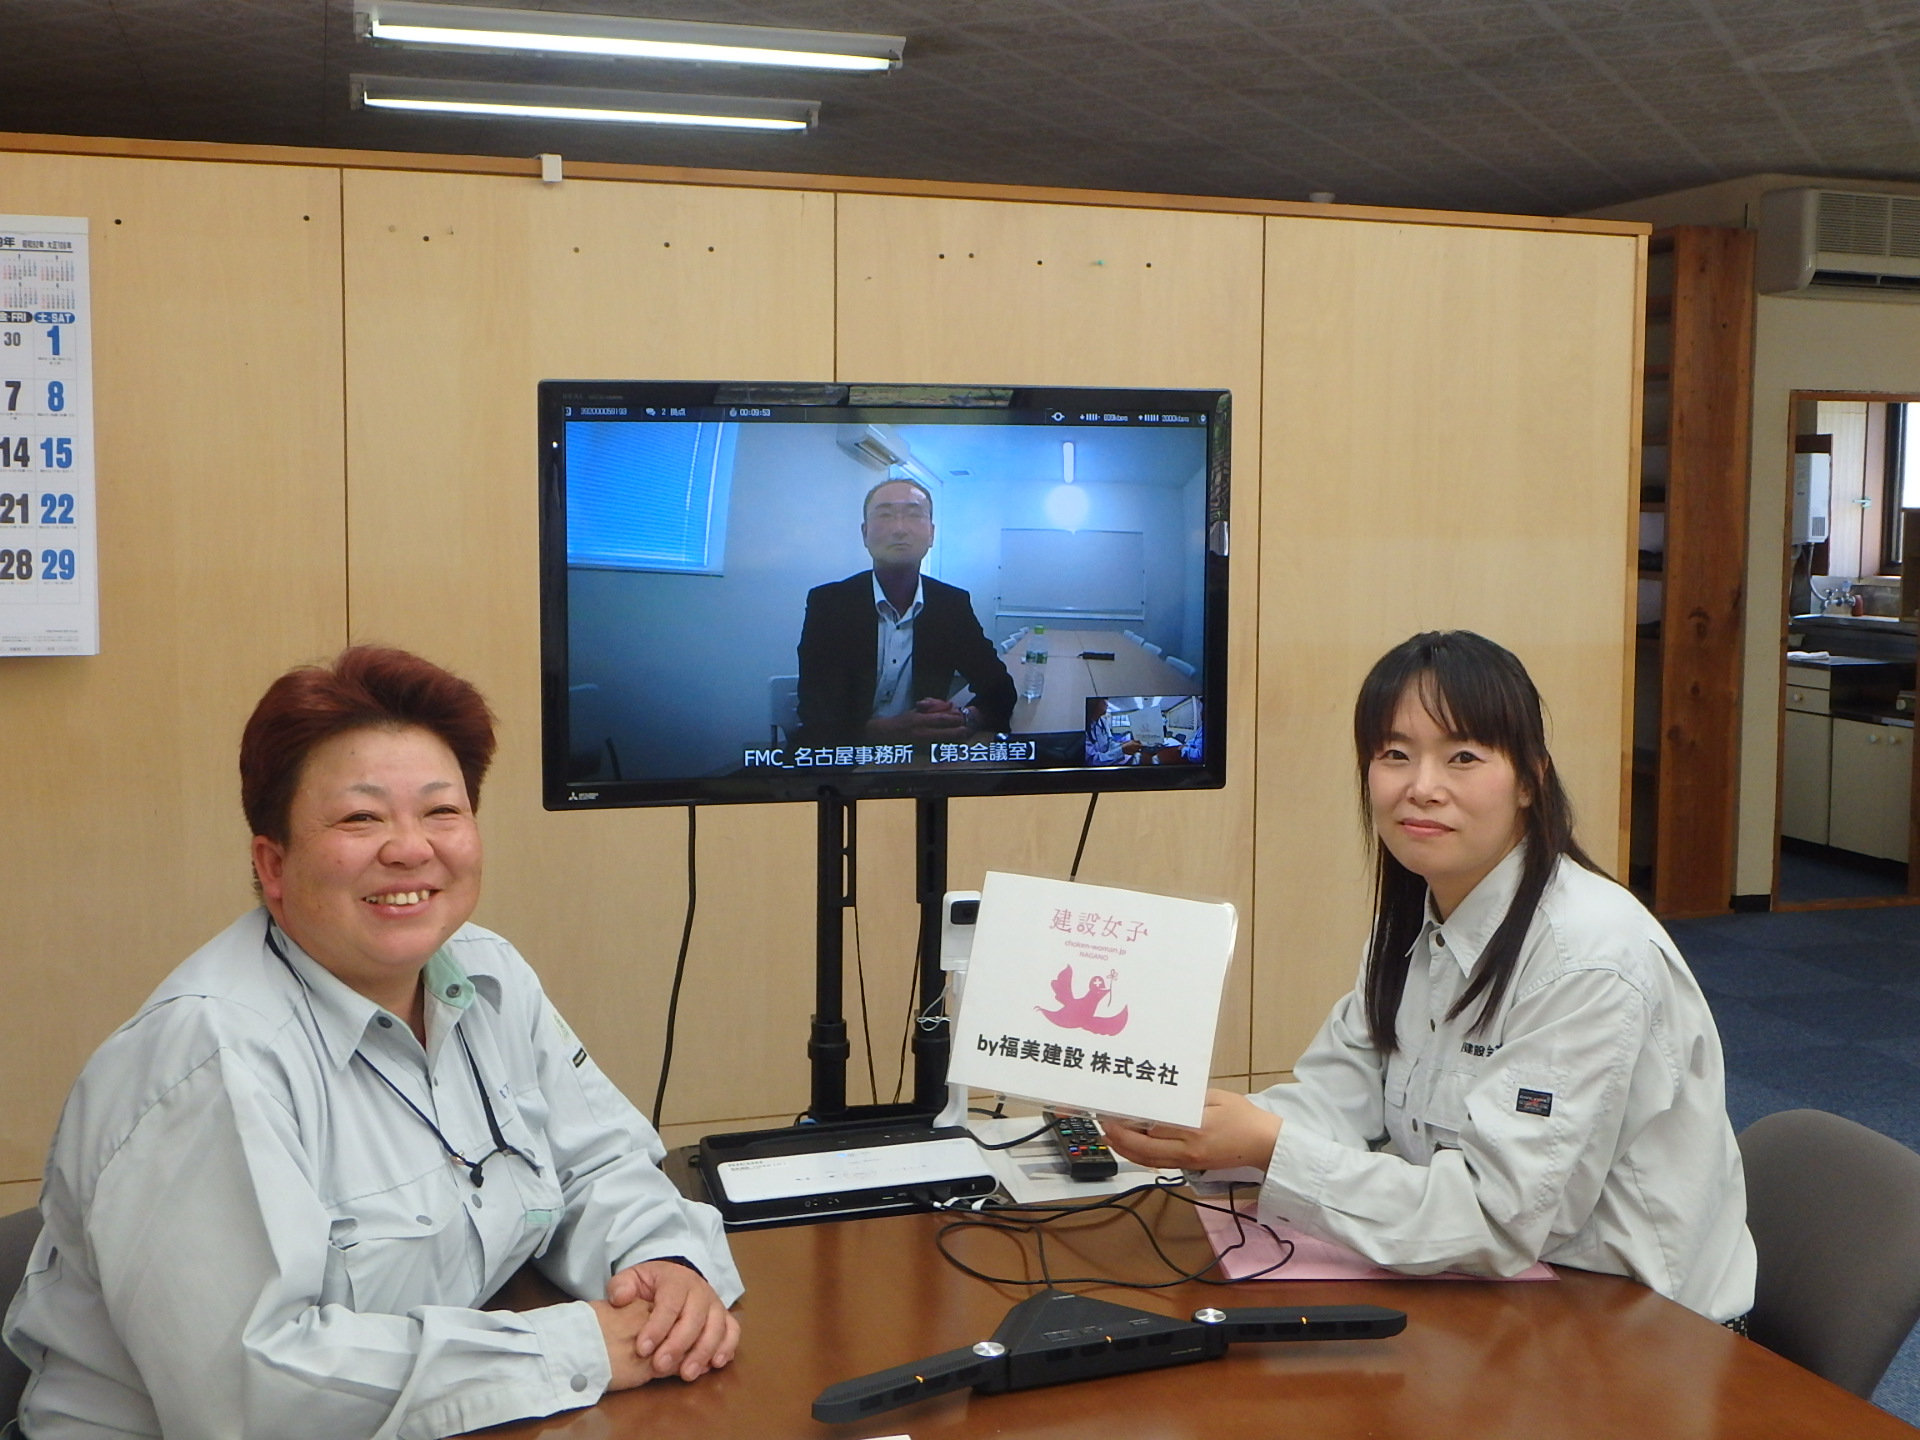 名古屋事務所の 取締役副社長 竹内 祥一さんとテレビ会議で